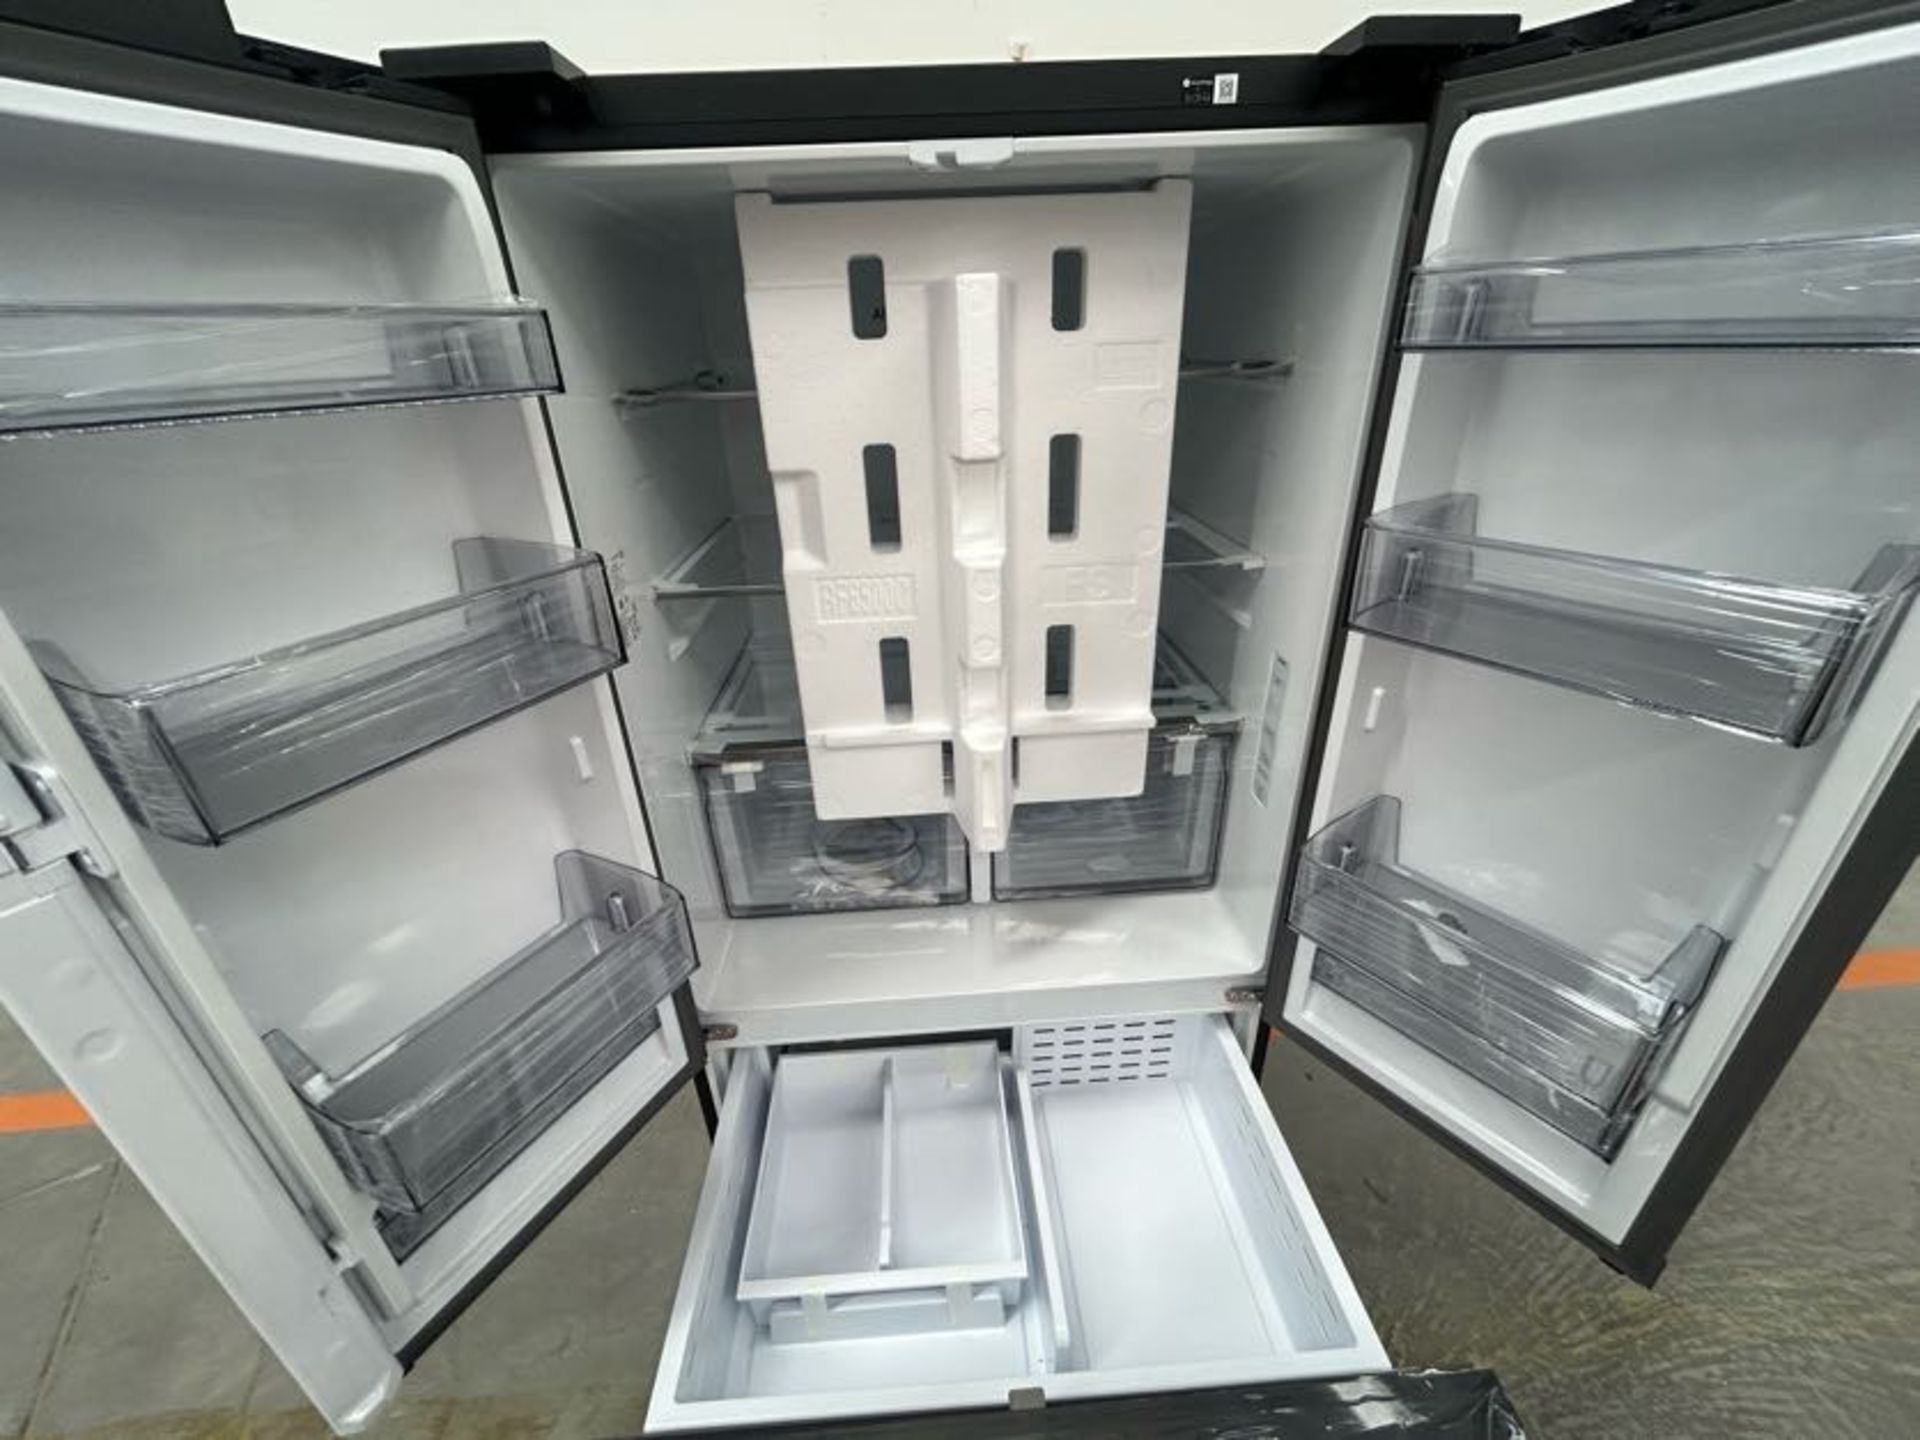 Refrigerador Marca SAMSUNG, Modelo RF32CG5N10B1EM, Serie 0668B, Color NEGRO (Equipo de devolución) - Image 4 of 5